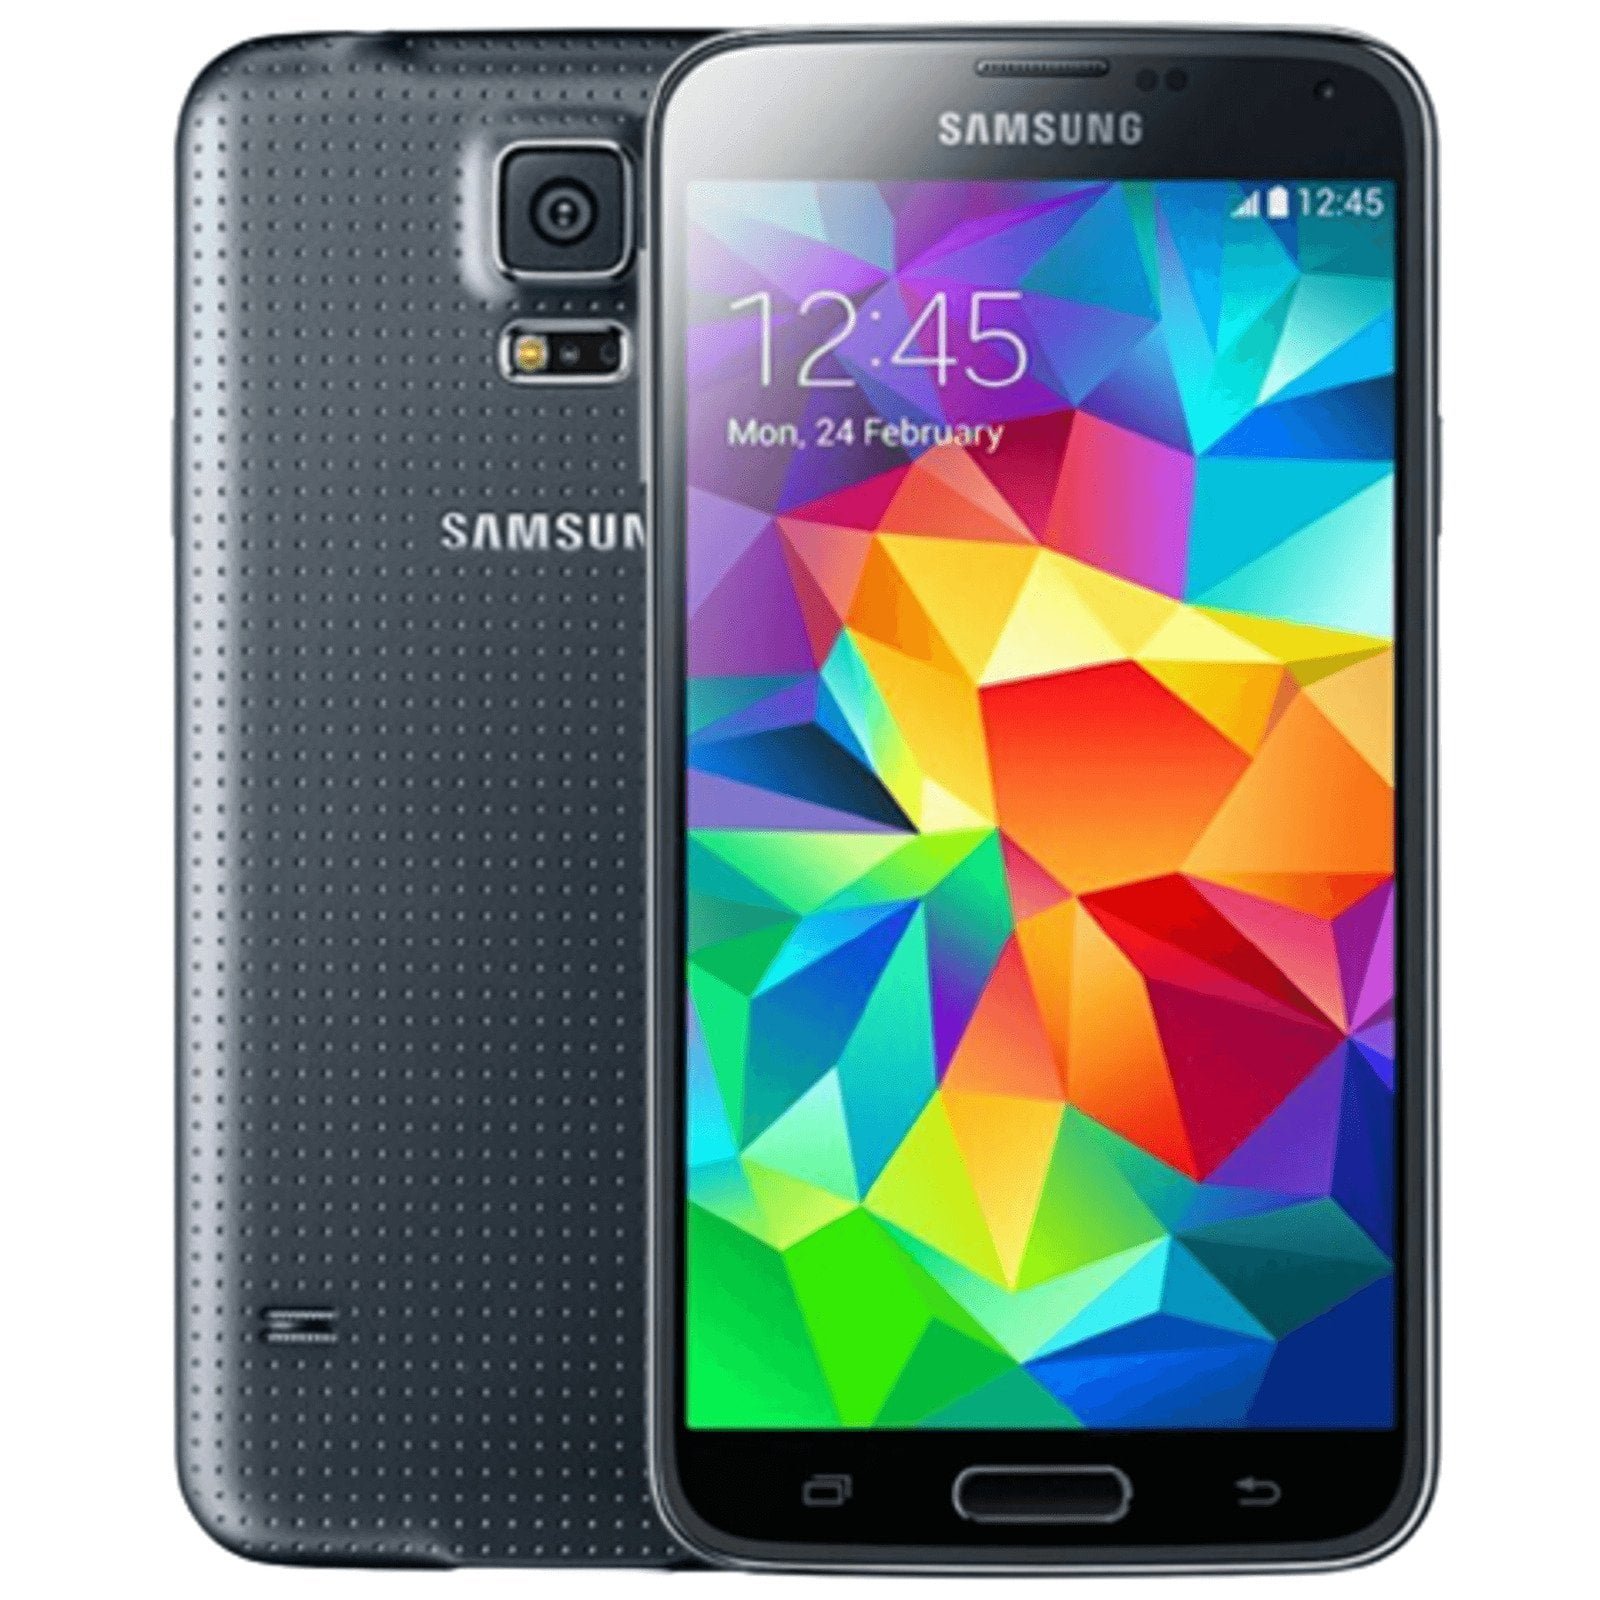 Samsung Galaxy S5 Neo 16 GB nero | sbloccato | ottime condizioni